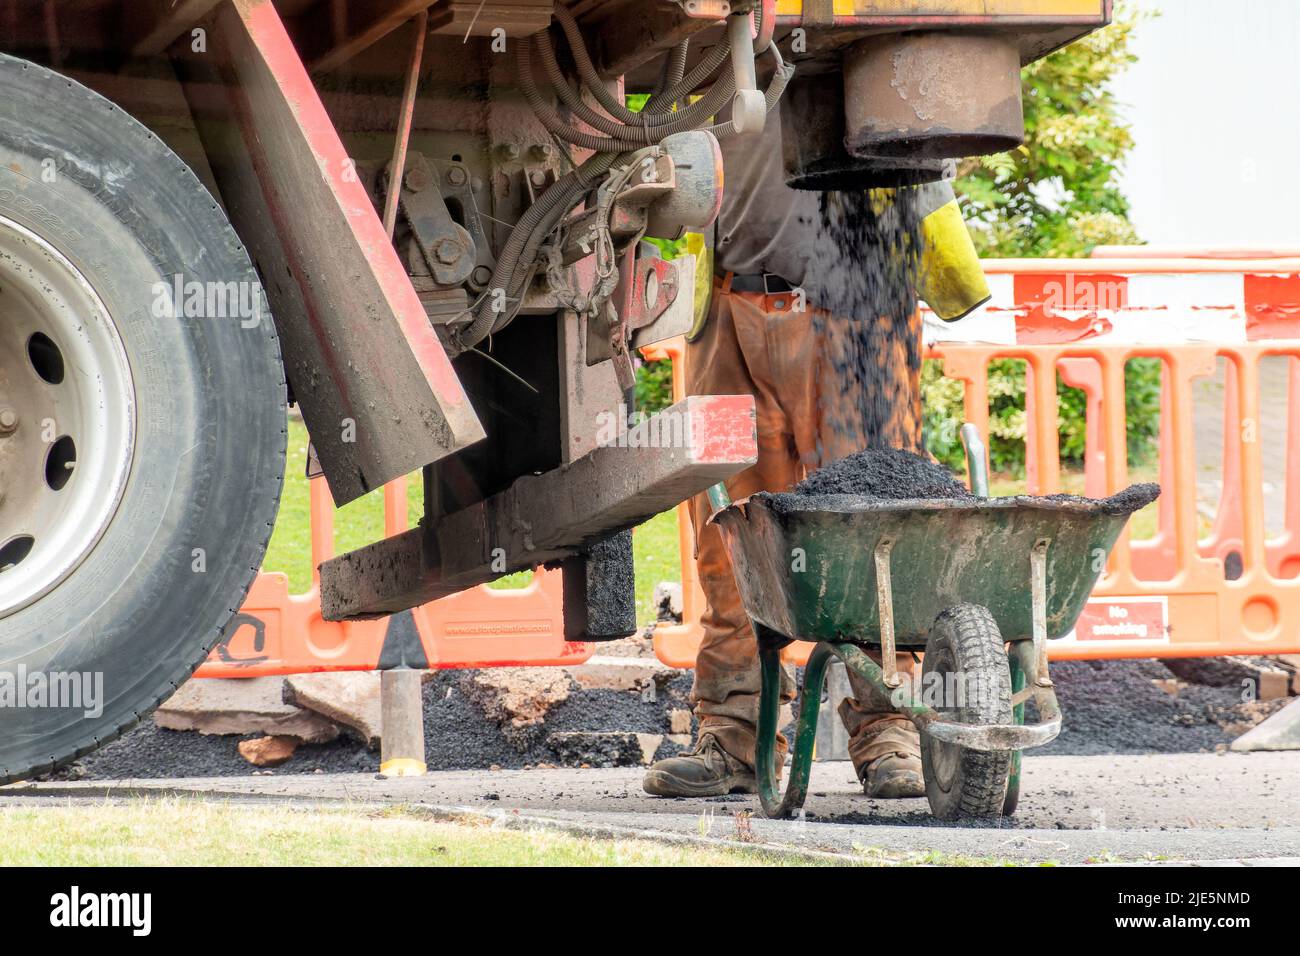 Un obrero espera junto a una carretilla mientras se llena de asfalto fresco de un camión. El asfalto es para reparaciones a una calle que ha sido excavada Foto de stock